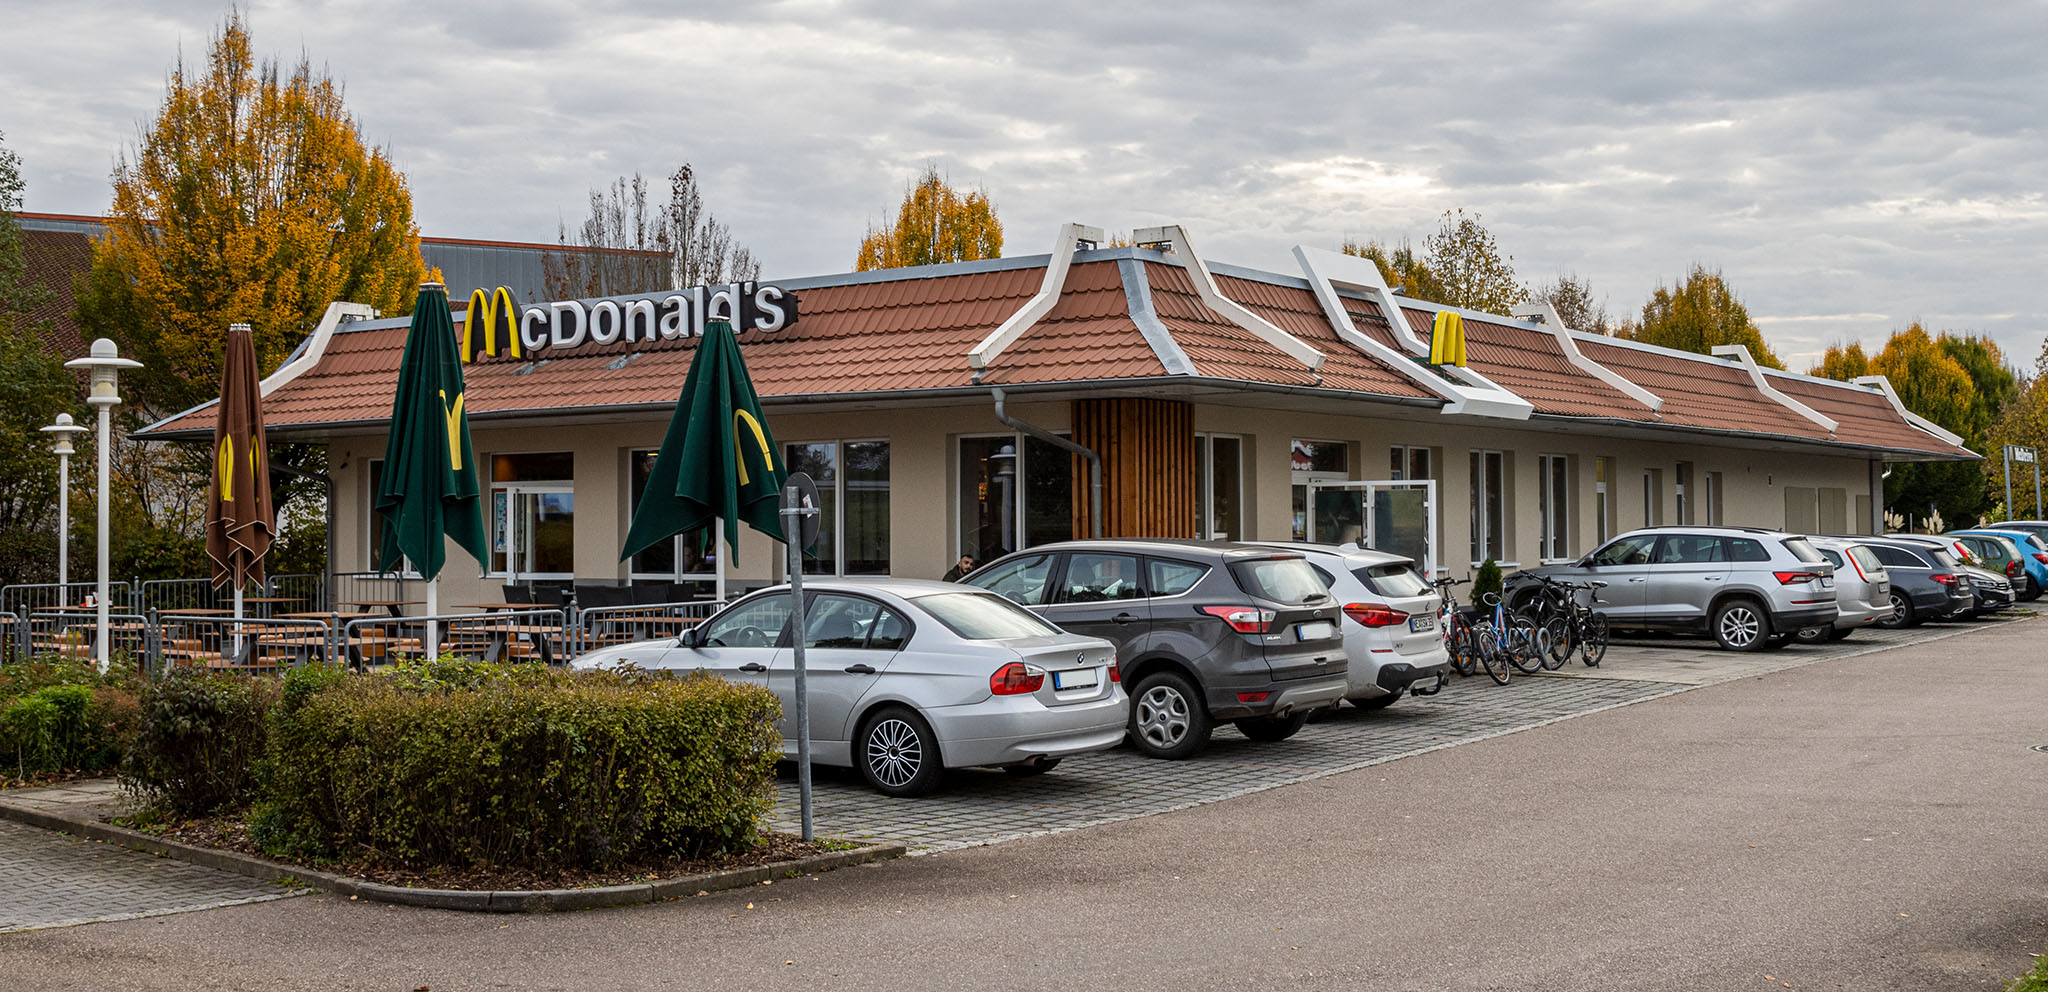 Das McDonald’s-Restaurant in Schrobenhausen